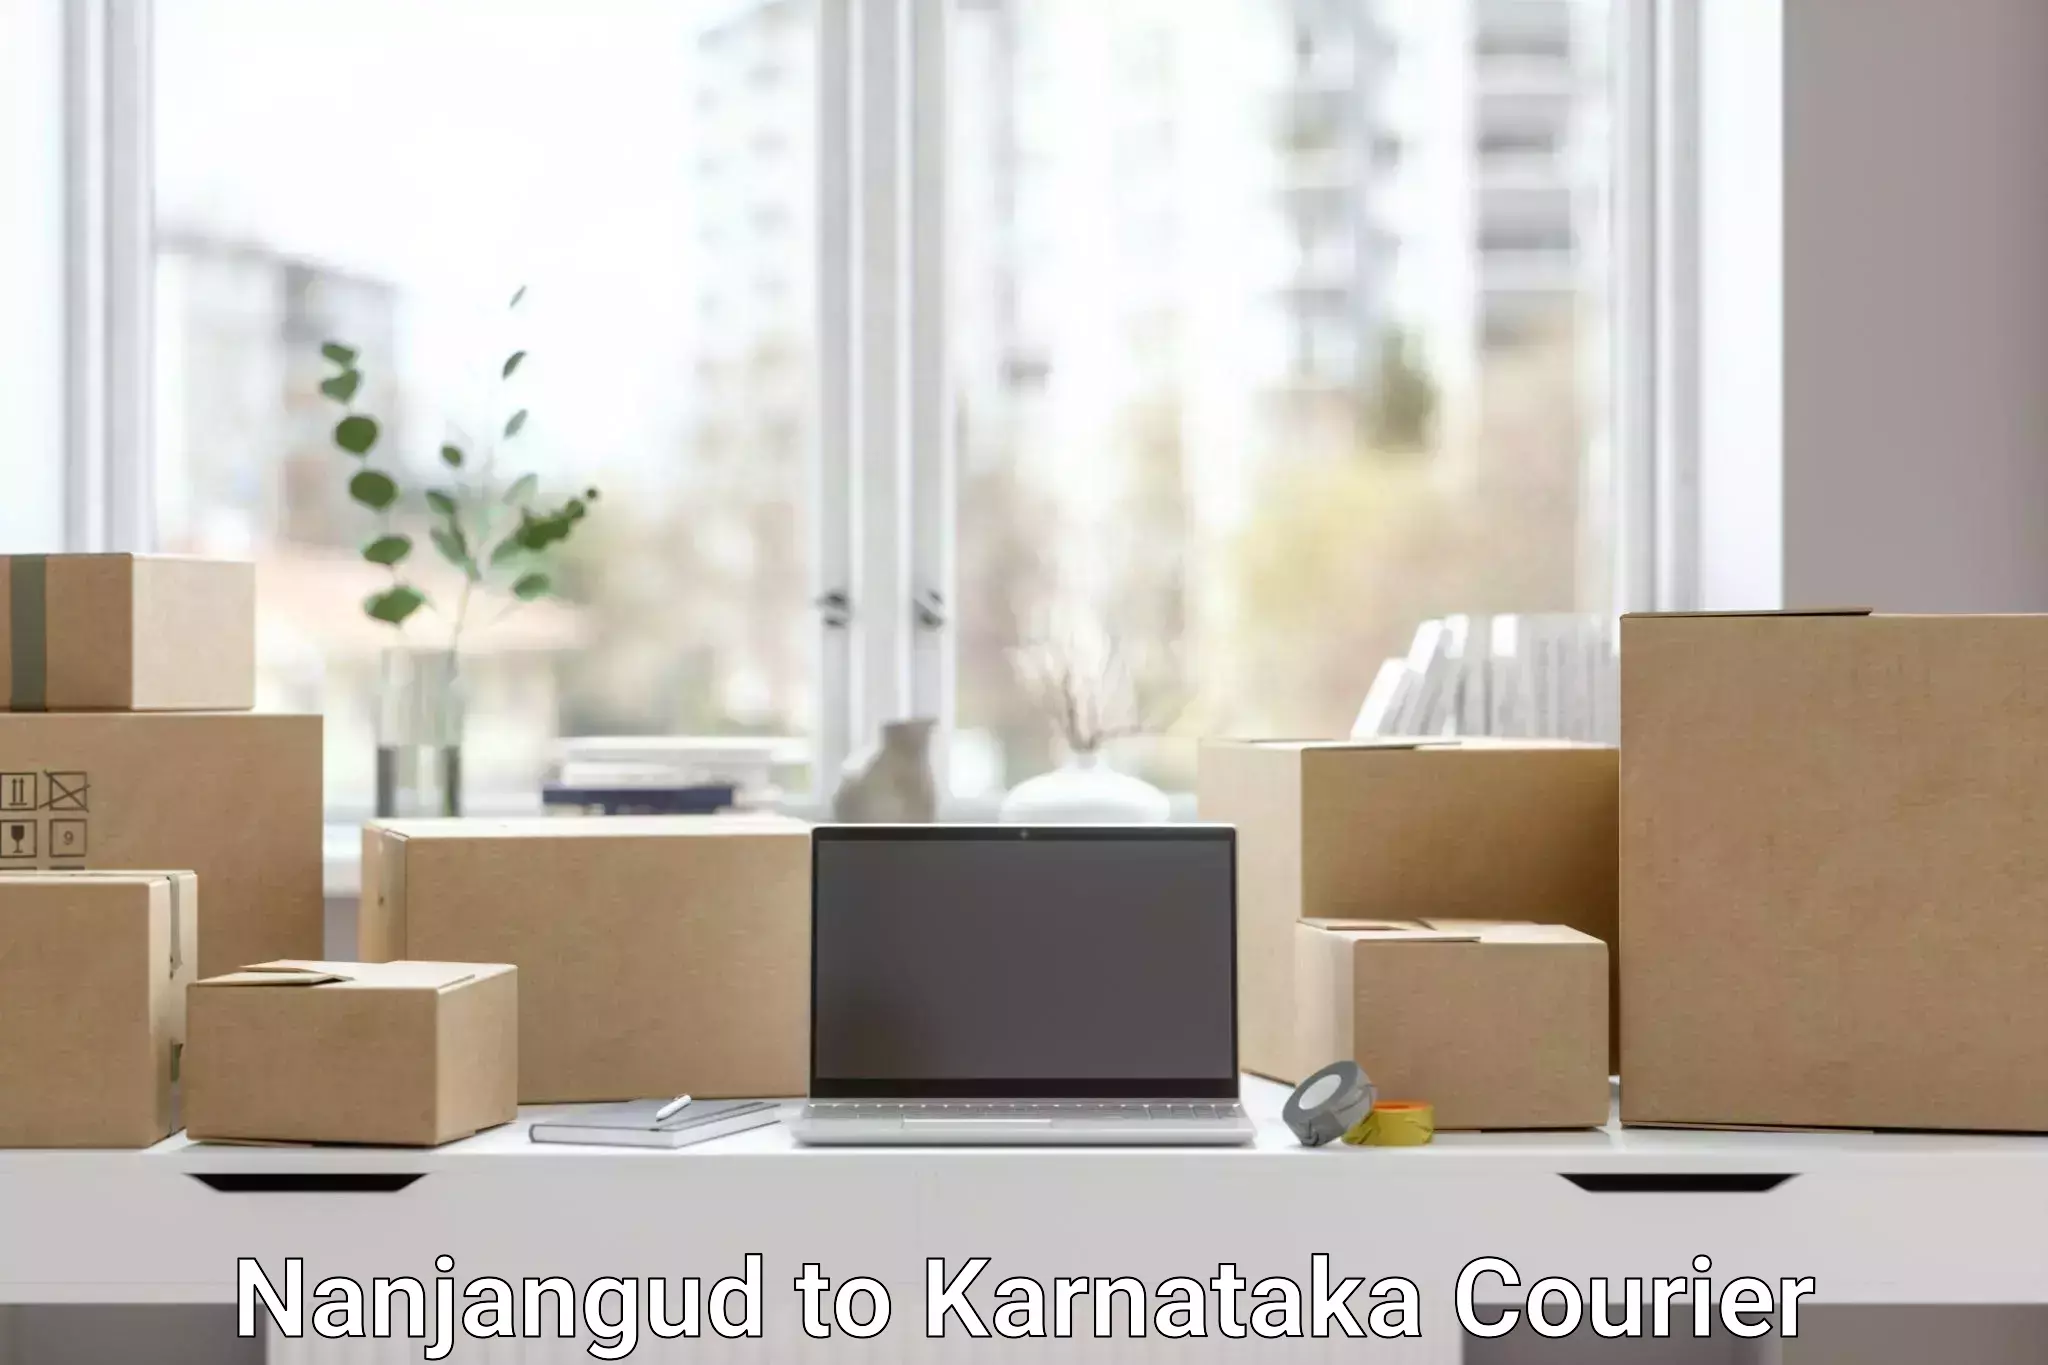 Comprehensive delivery network Nanjangud to Kotturu